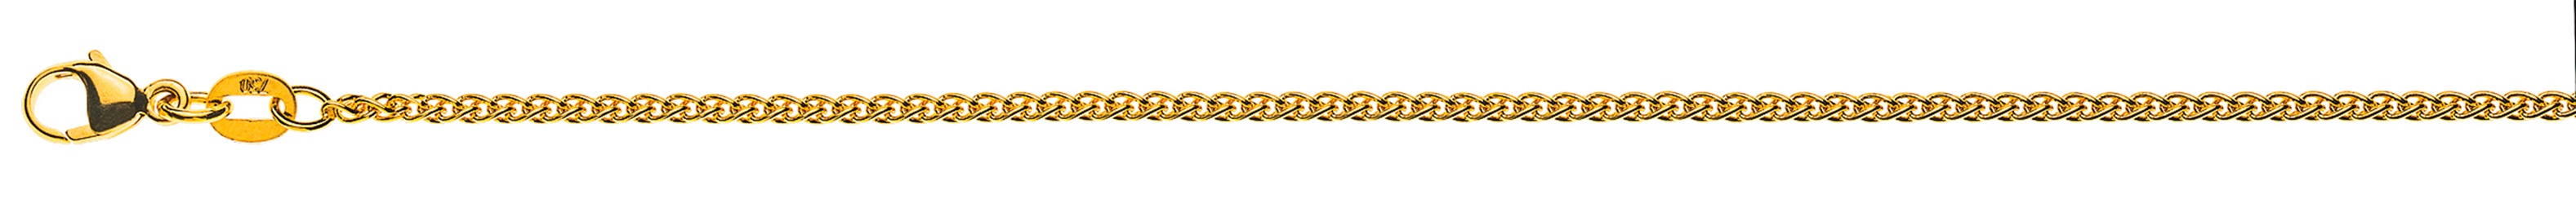 AURONOS Élégance Halskette Gelbgold 14K Zopfkette 55cm 1.6mm